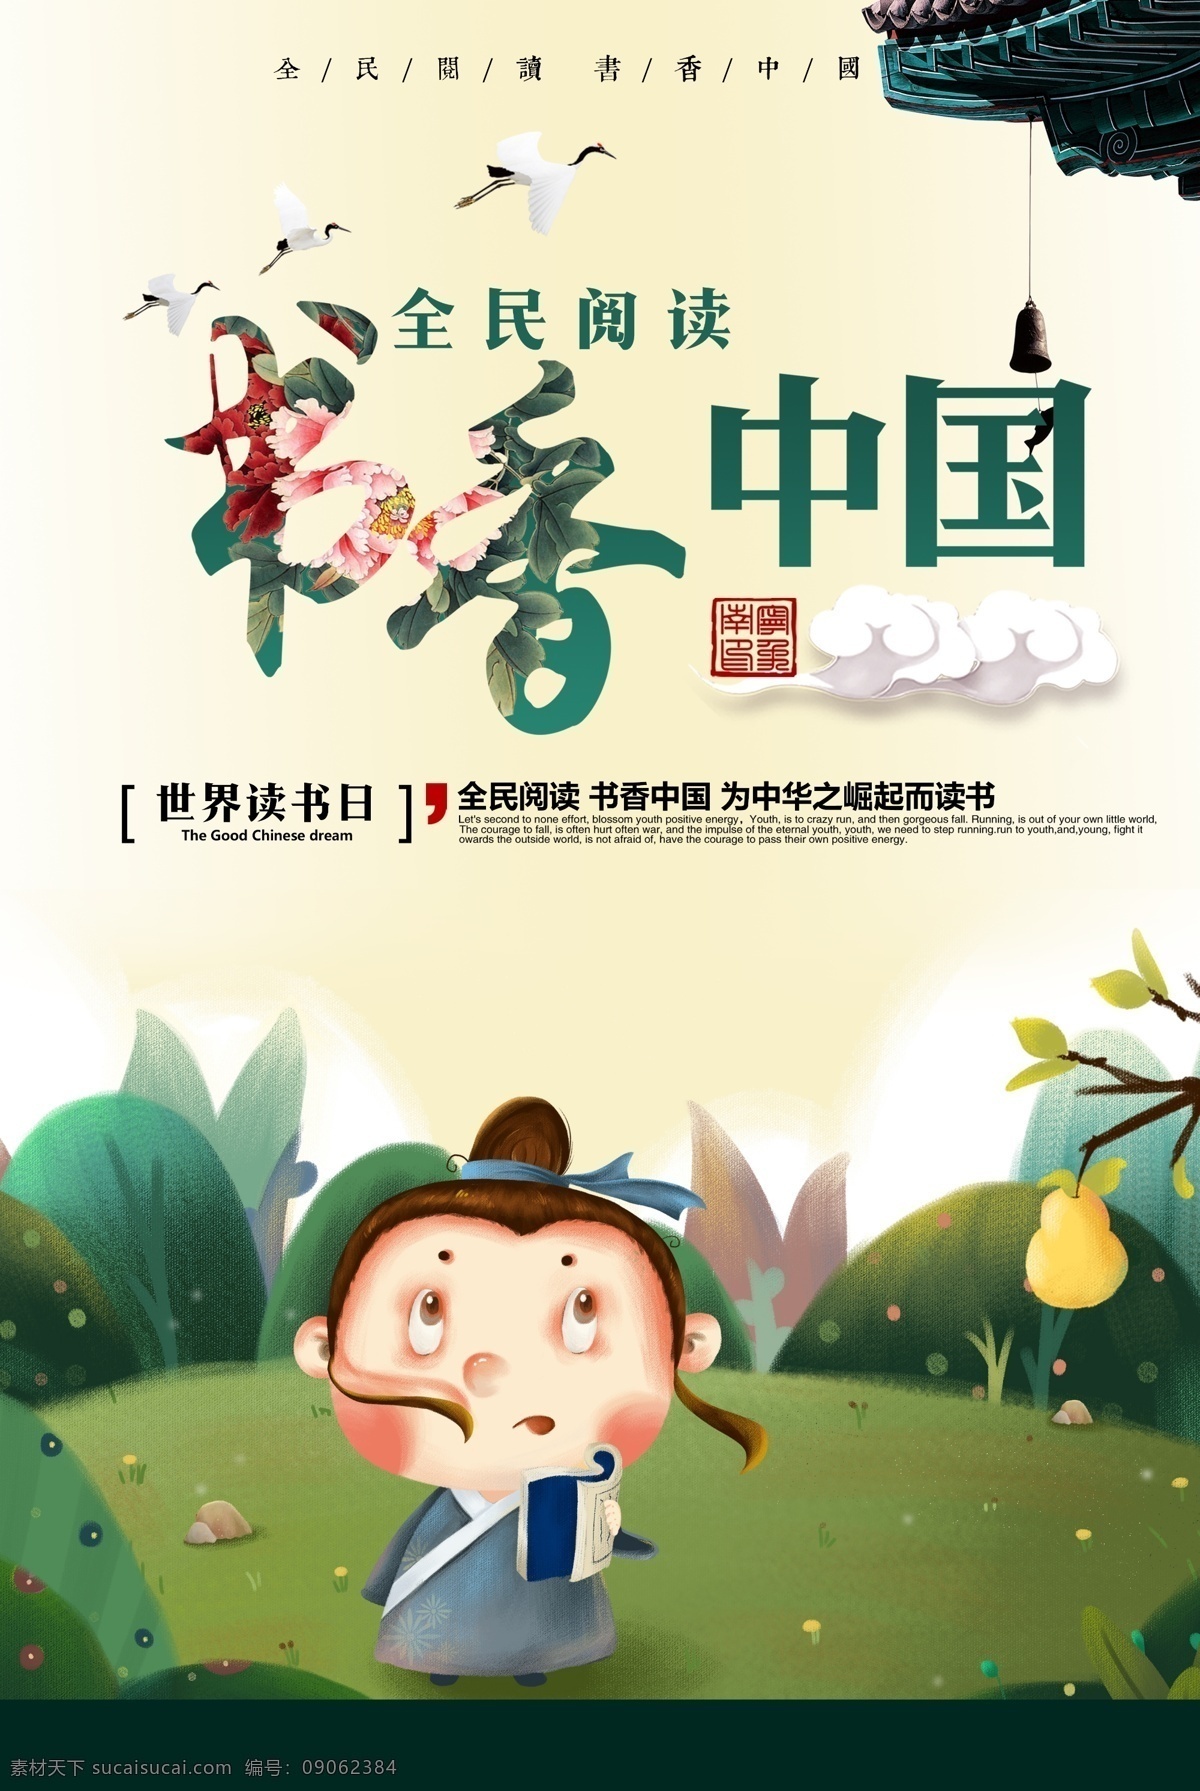 中国风 书香 书香门第 教育海报 读书 文化教育 海报 教育 教育文化